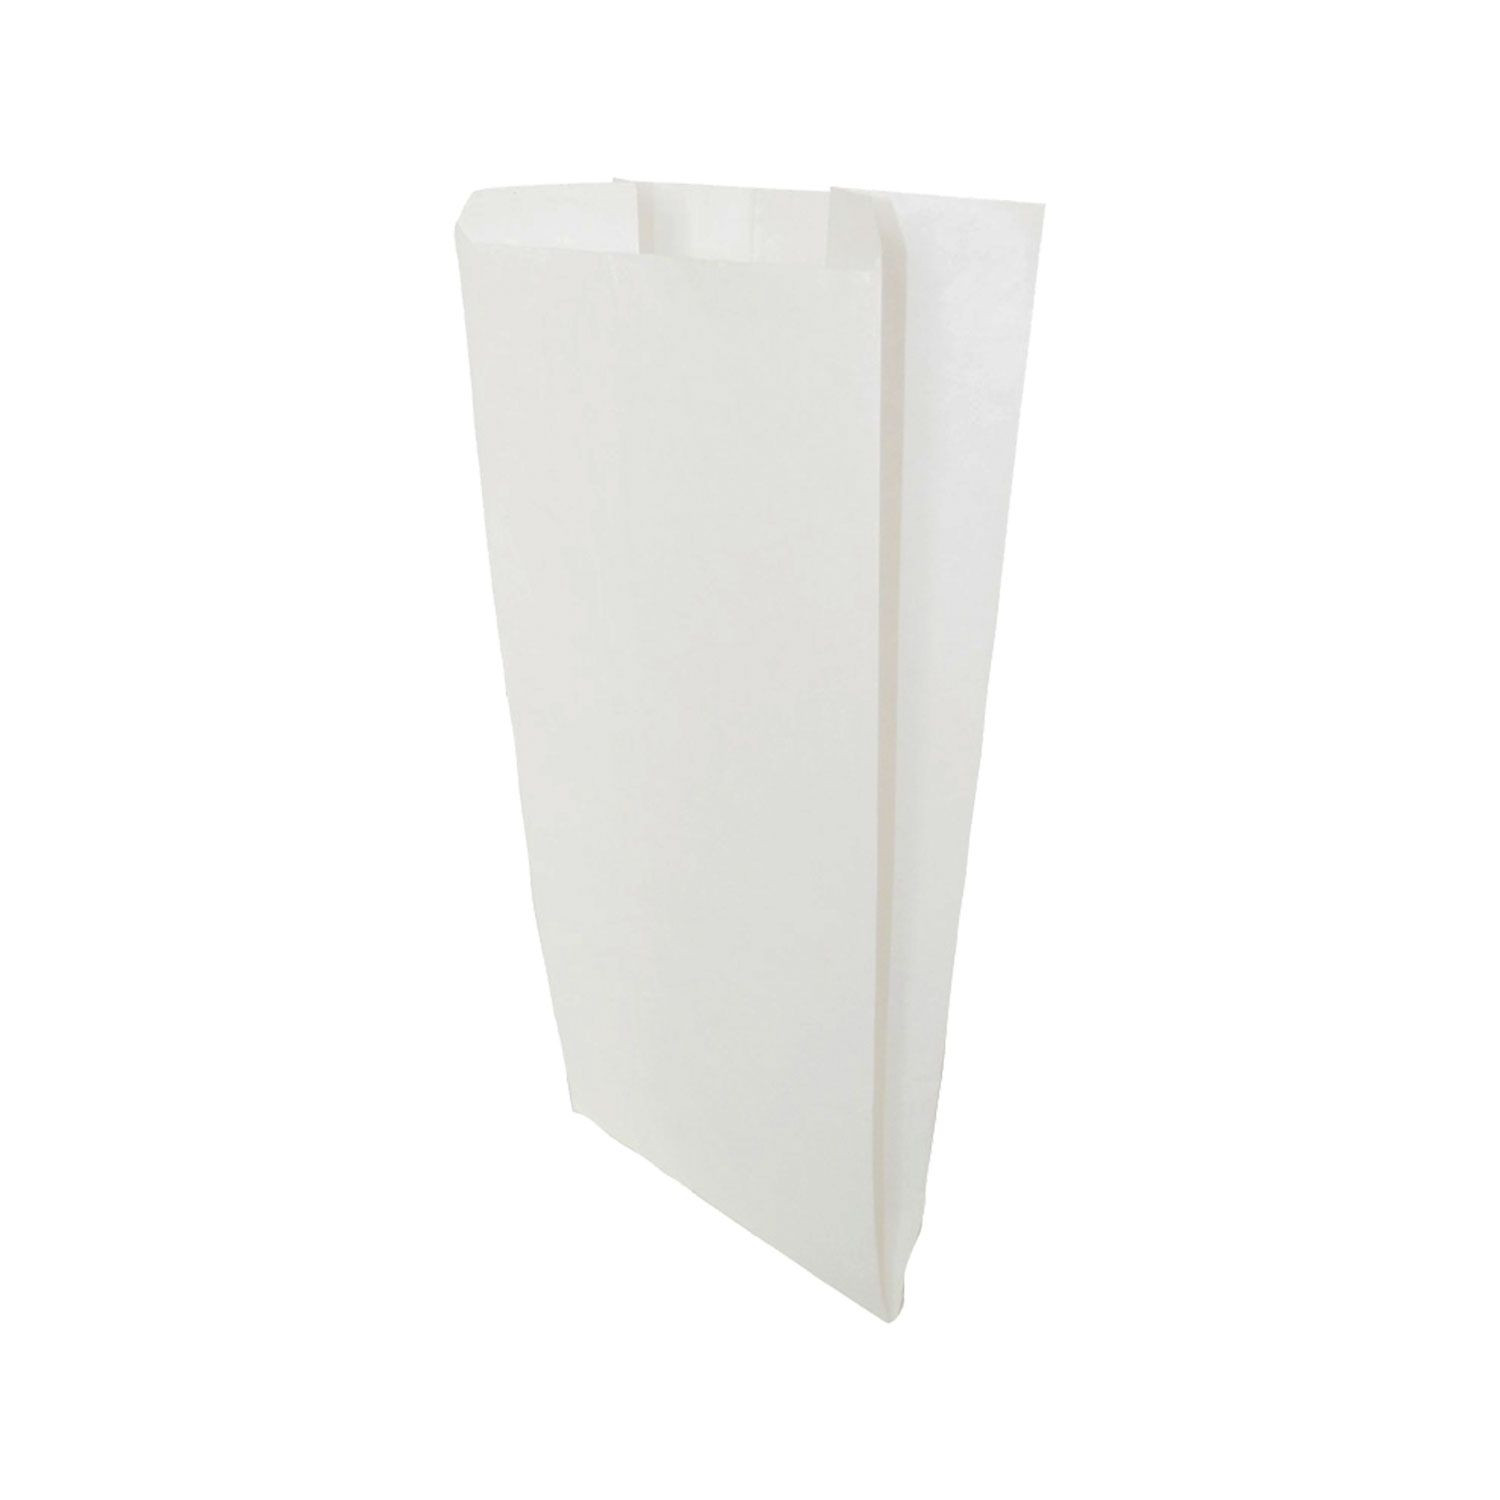 Sacchetti in carta kraft bianchi 15×35 per alimenti secchi o